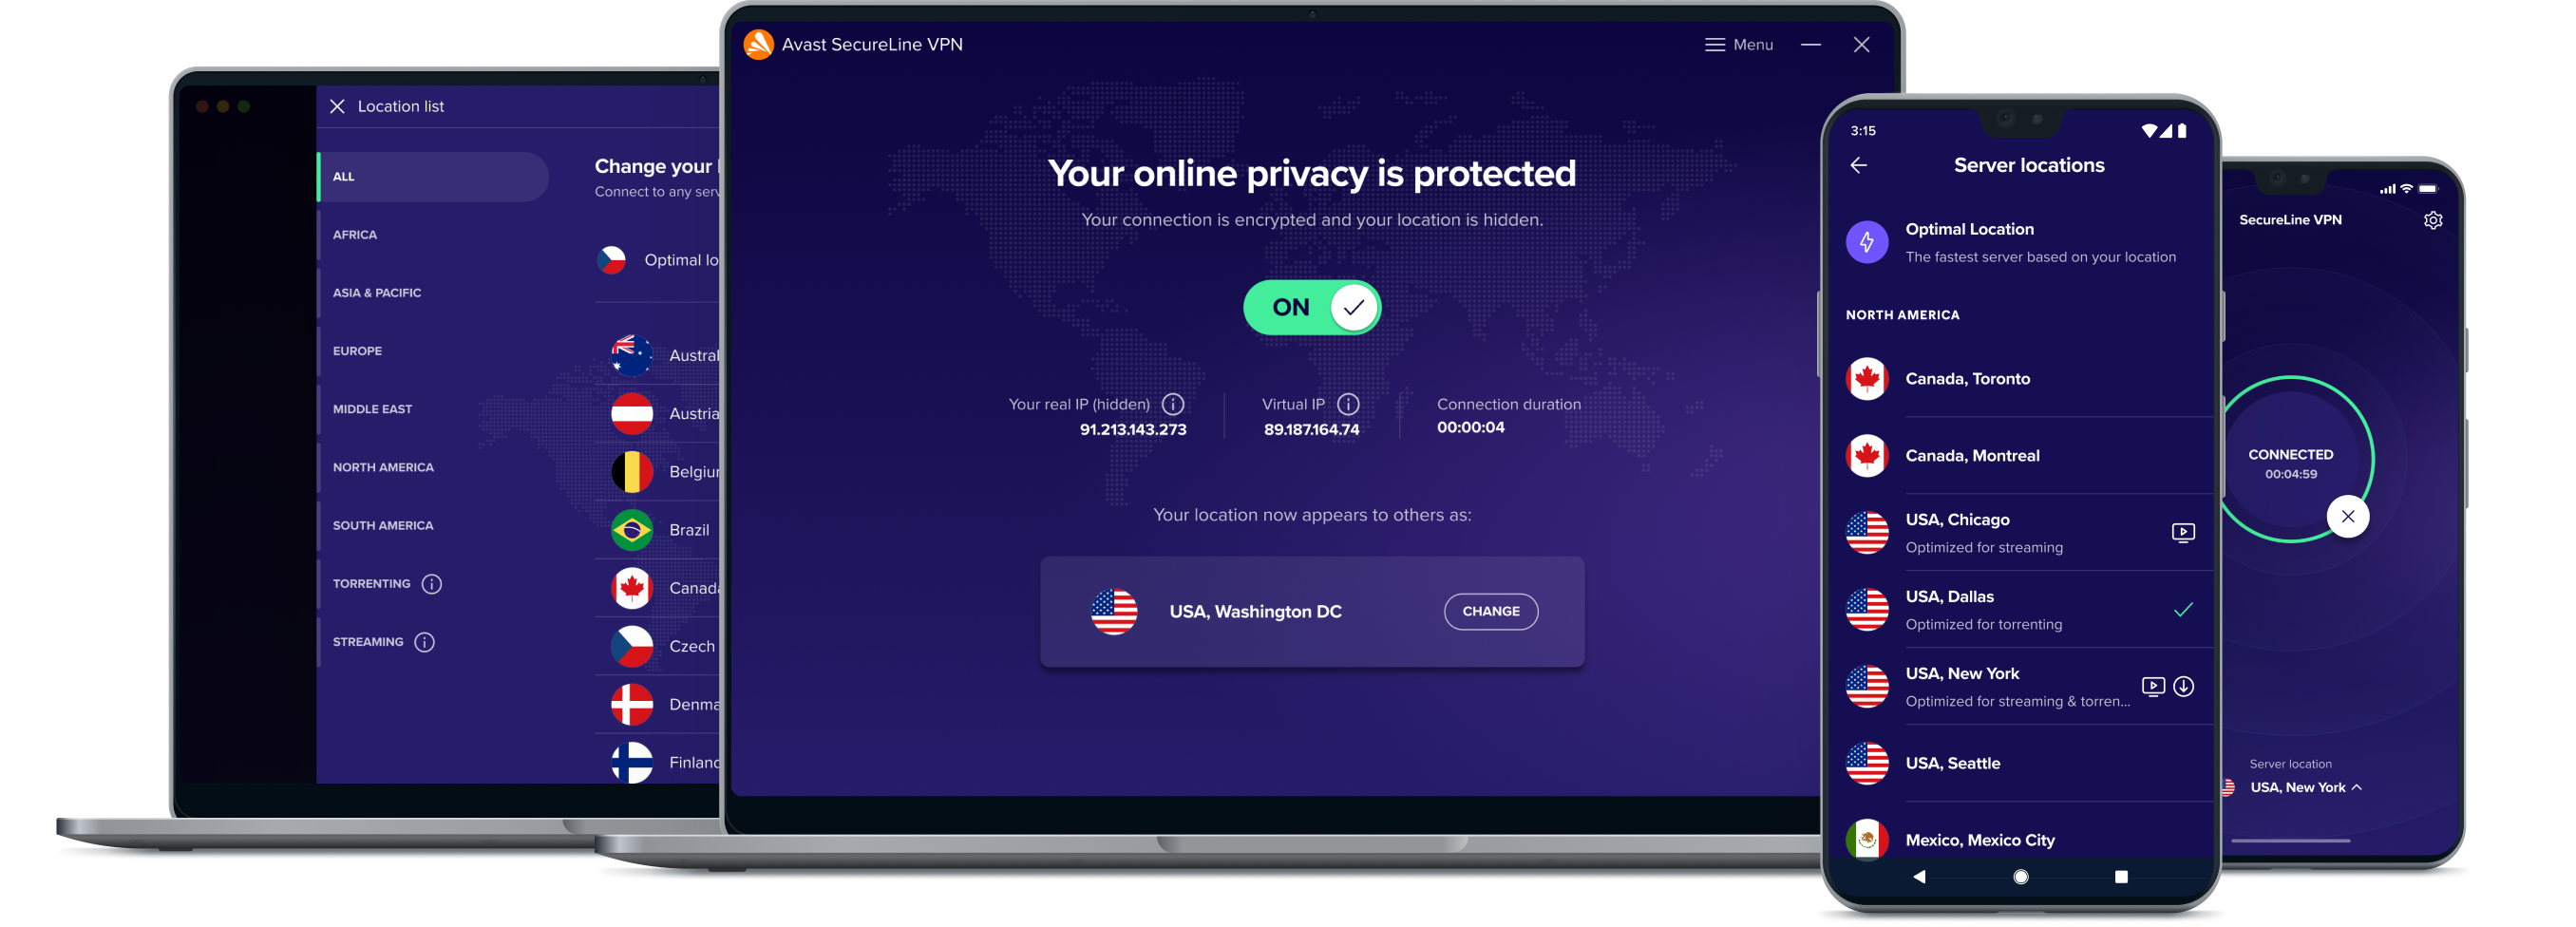 إطلاق العنان لحرية أكبر عبر الإنترنت من خلال خدمة VPN لدينا